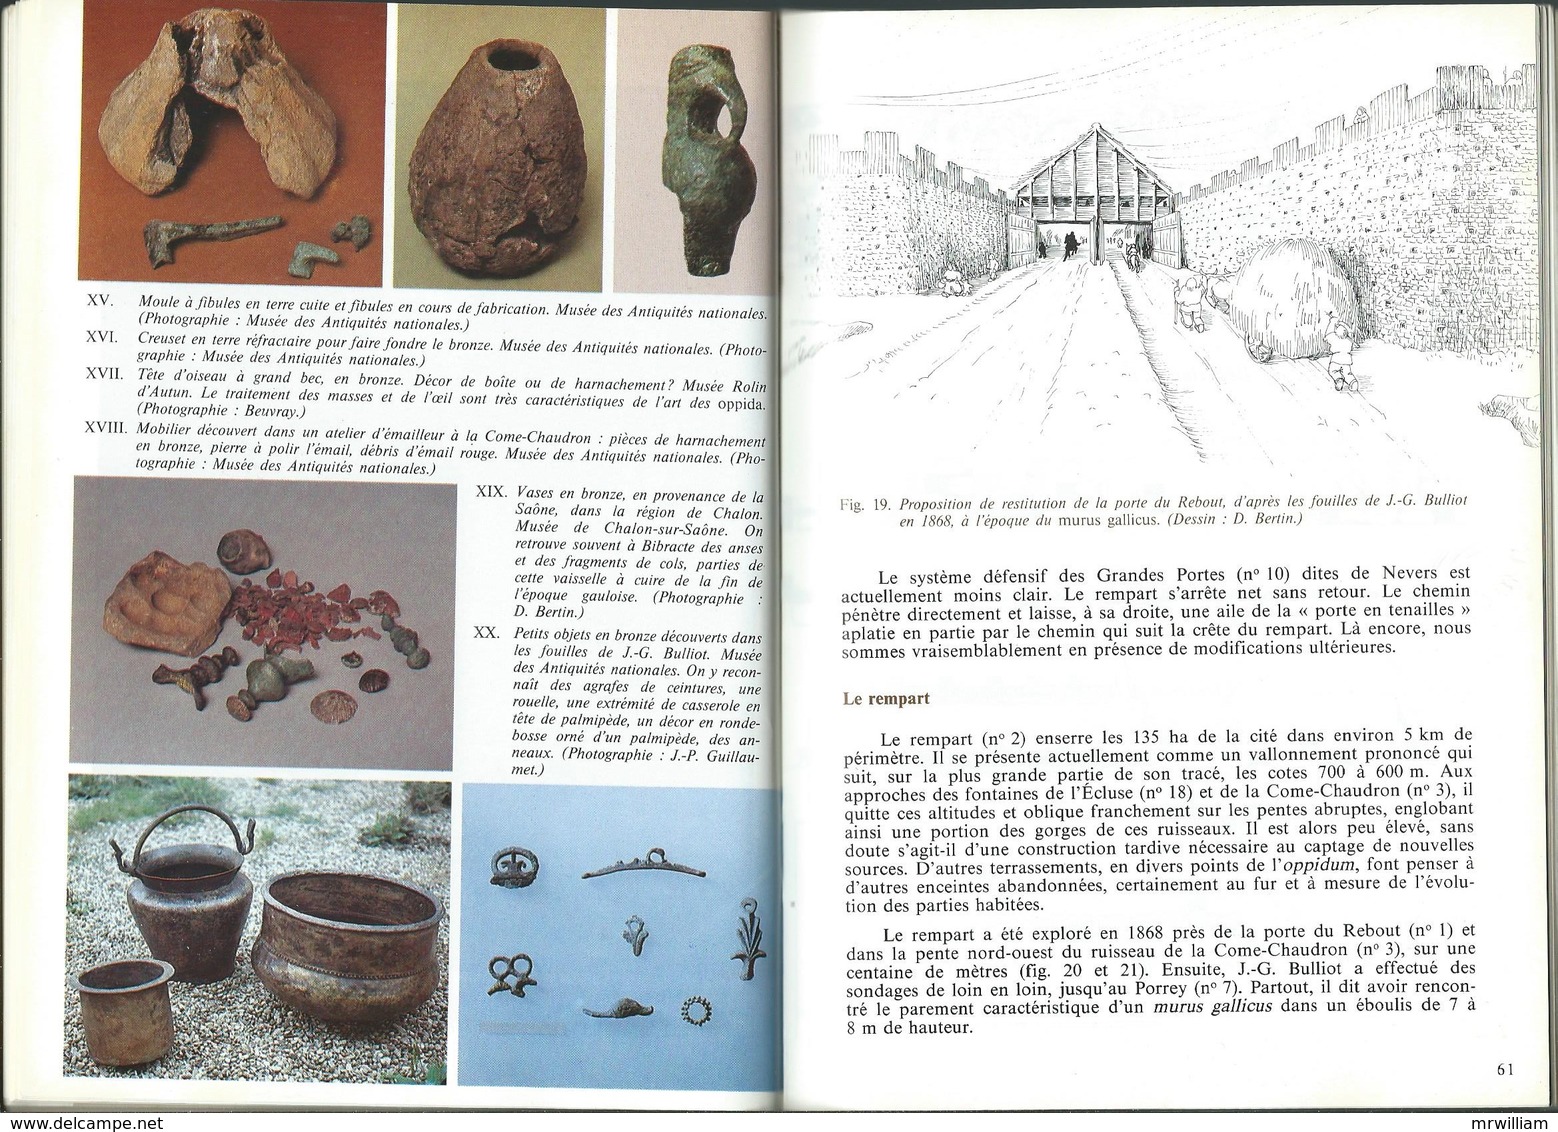 BIBRACTE Ville Gauloise sur le Mont Beuvray (71), Guides Archéologiques de la France (1987)